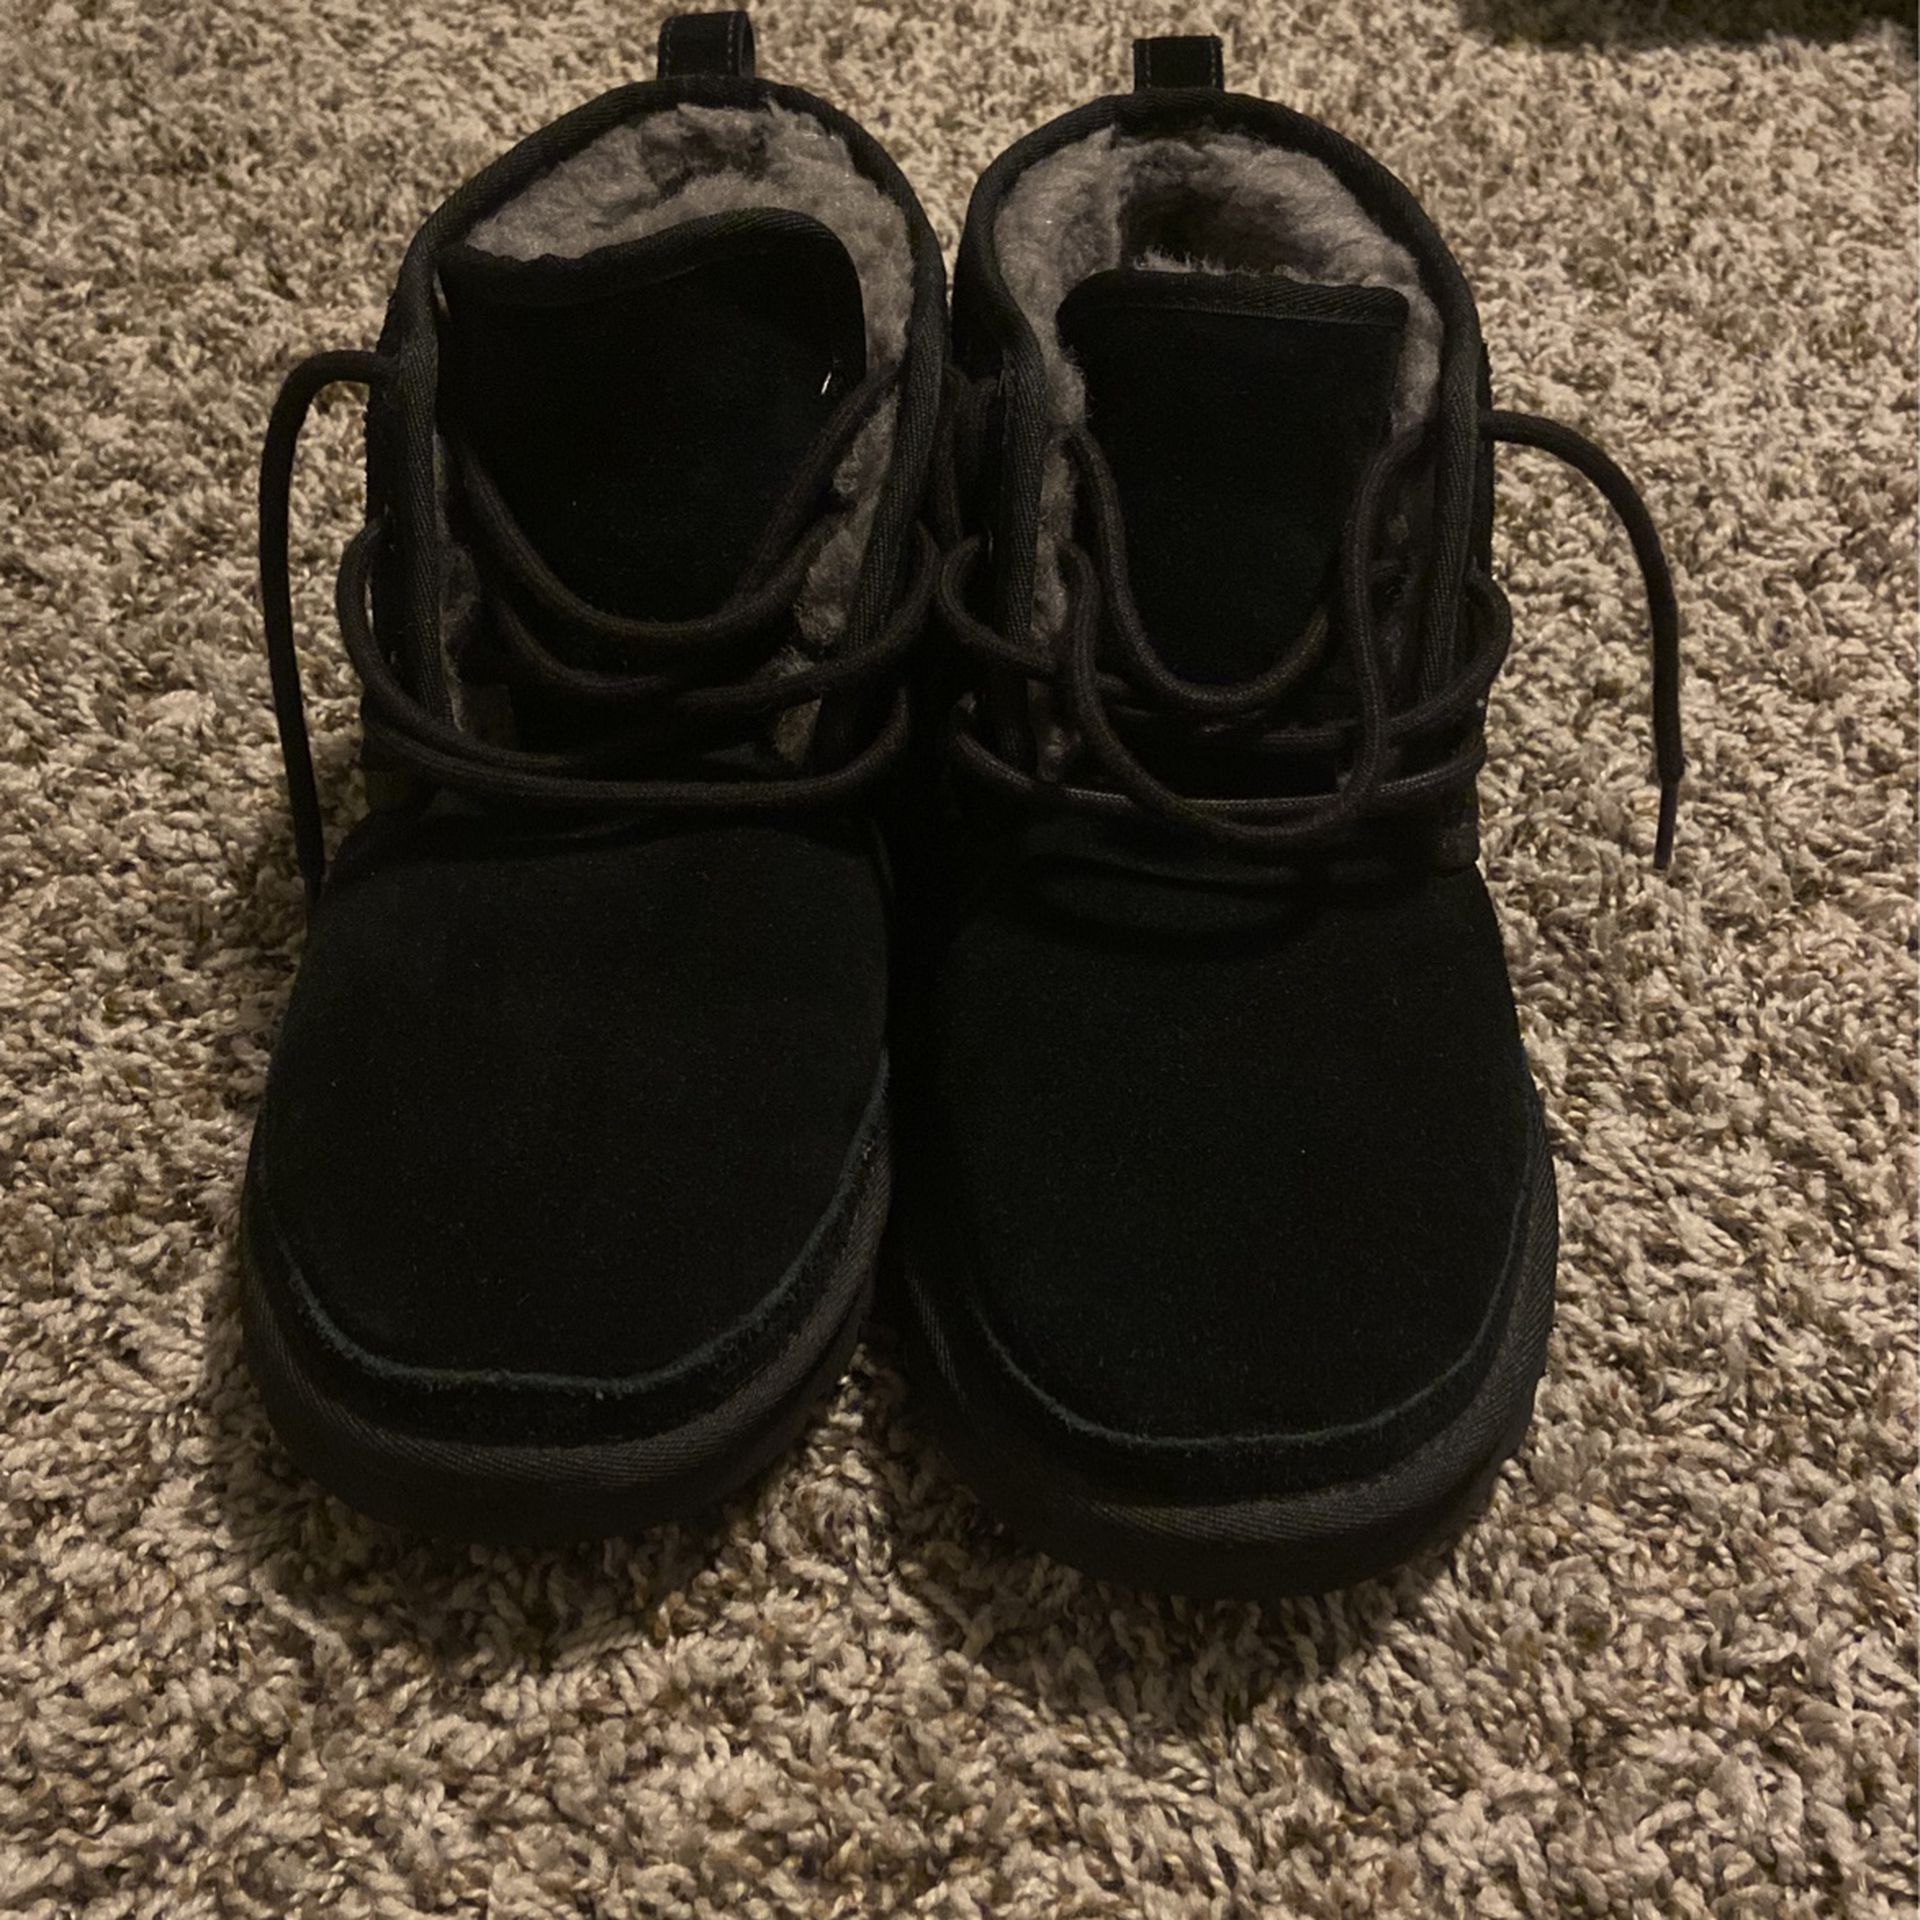 Men’s Black Ugg Boots Size 10